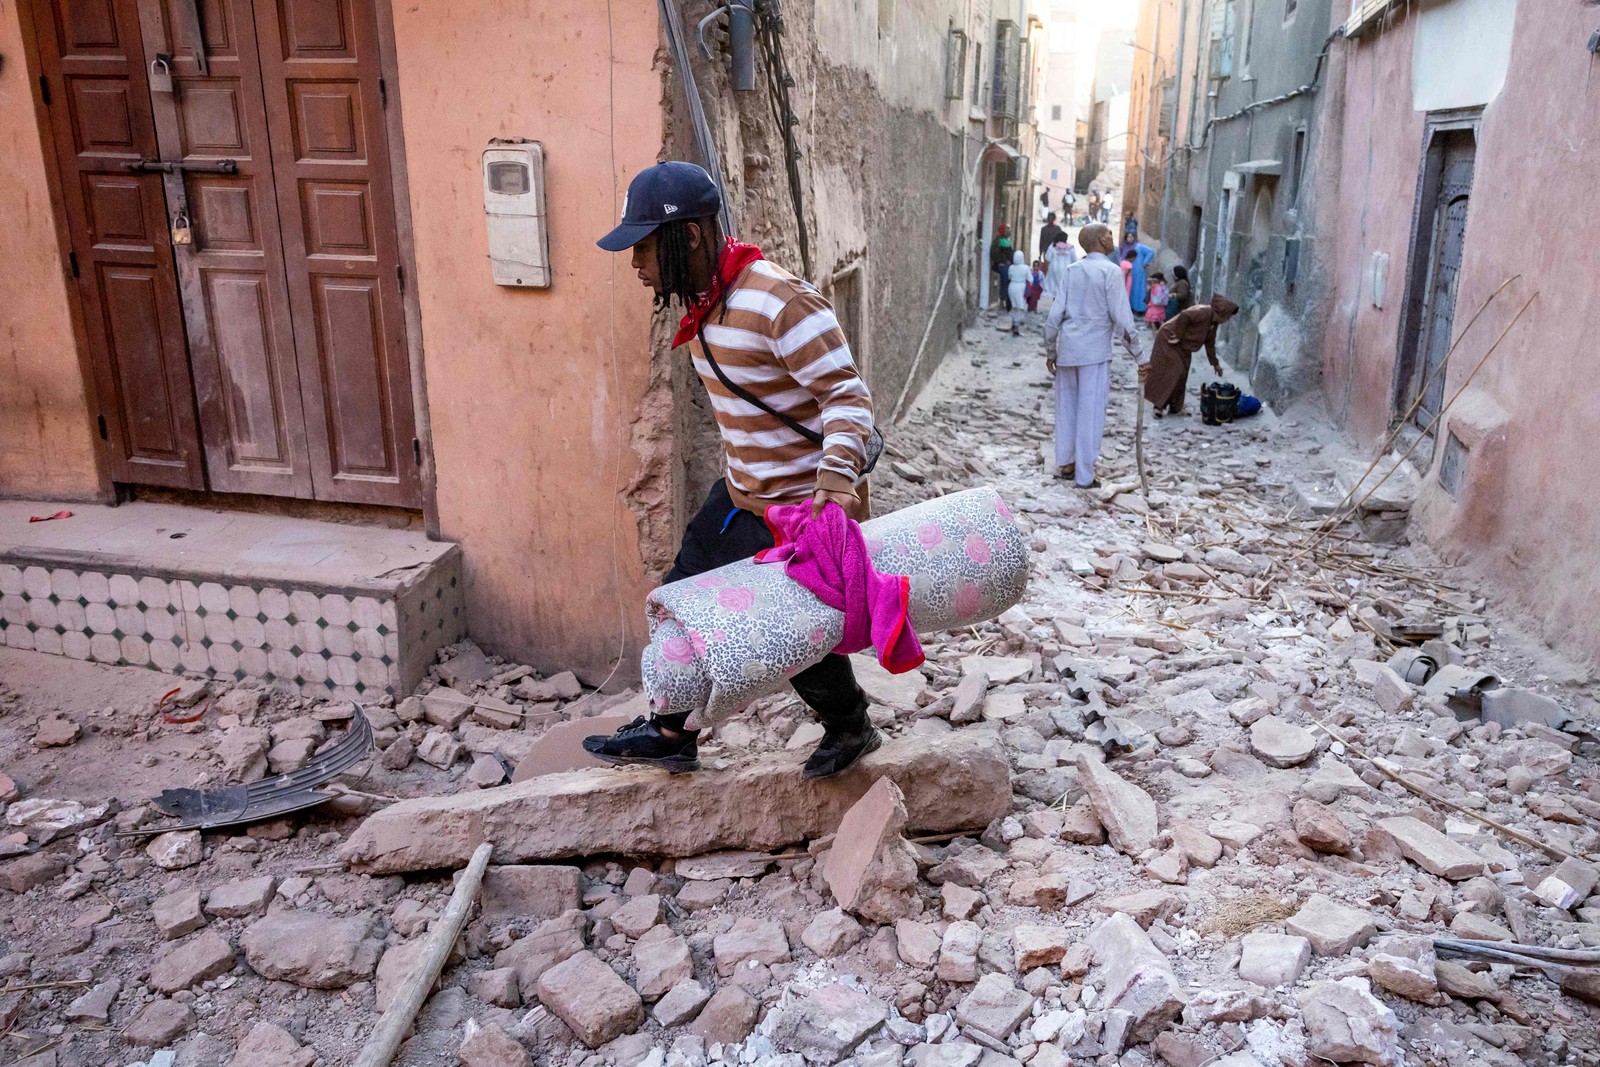 Homem caminha com seus pertences pelos escombros em um beco na cidade velha de Marrakesh, danificada pelo terremoto — Foto: Fadel Senna / AFP